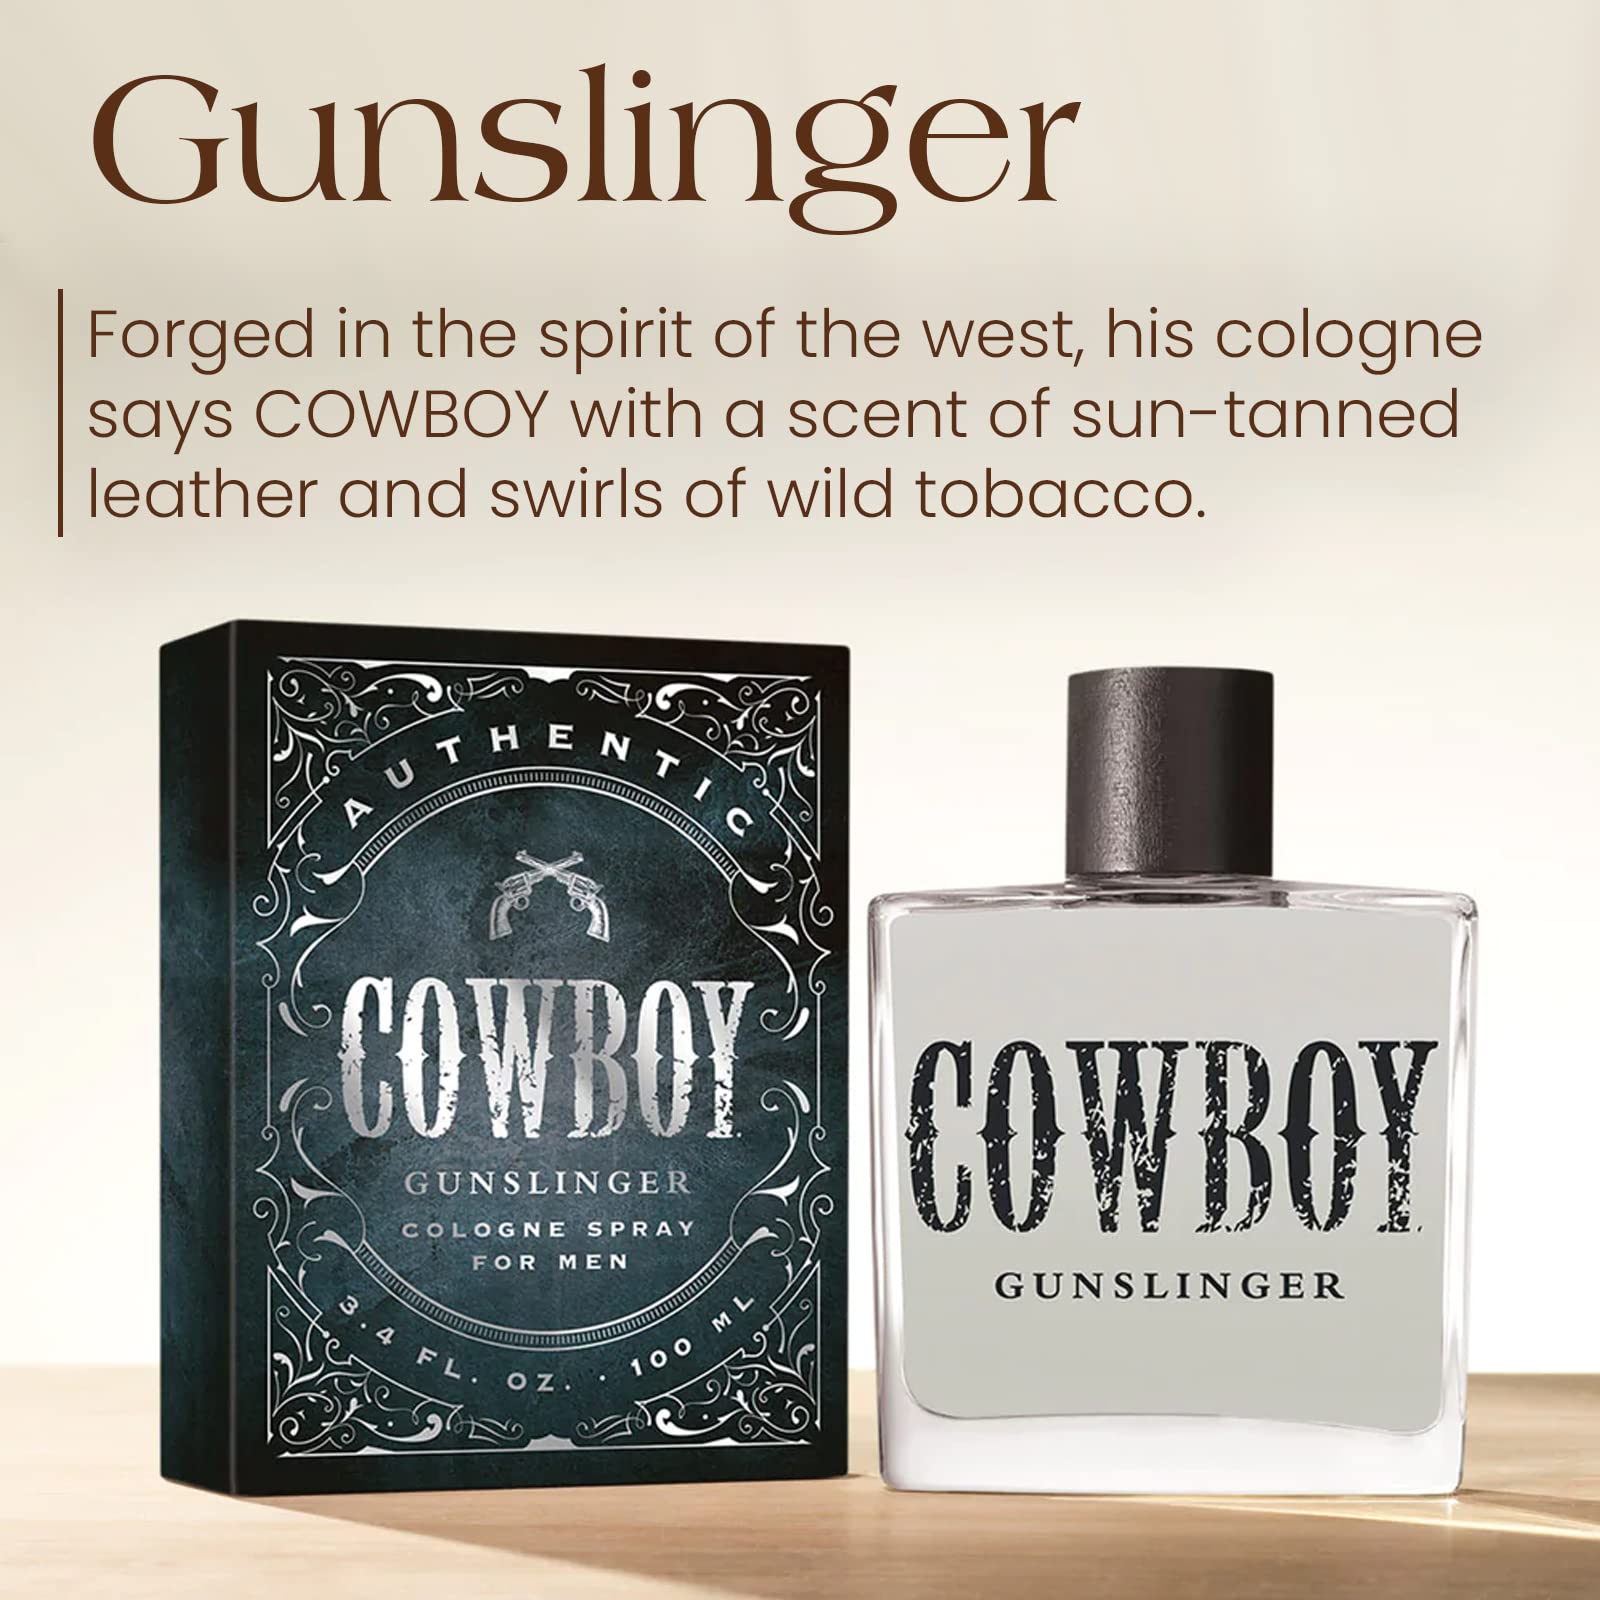 Tru Western Cowboy Gunslinger Men's Cologne, 3.4 fl oz (100 ml) - Warm, Fresh, Bold